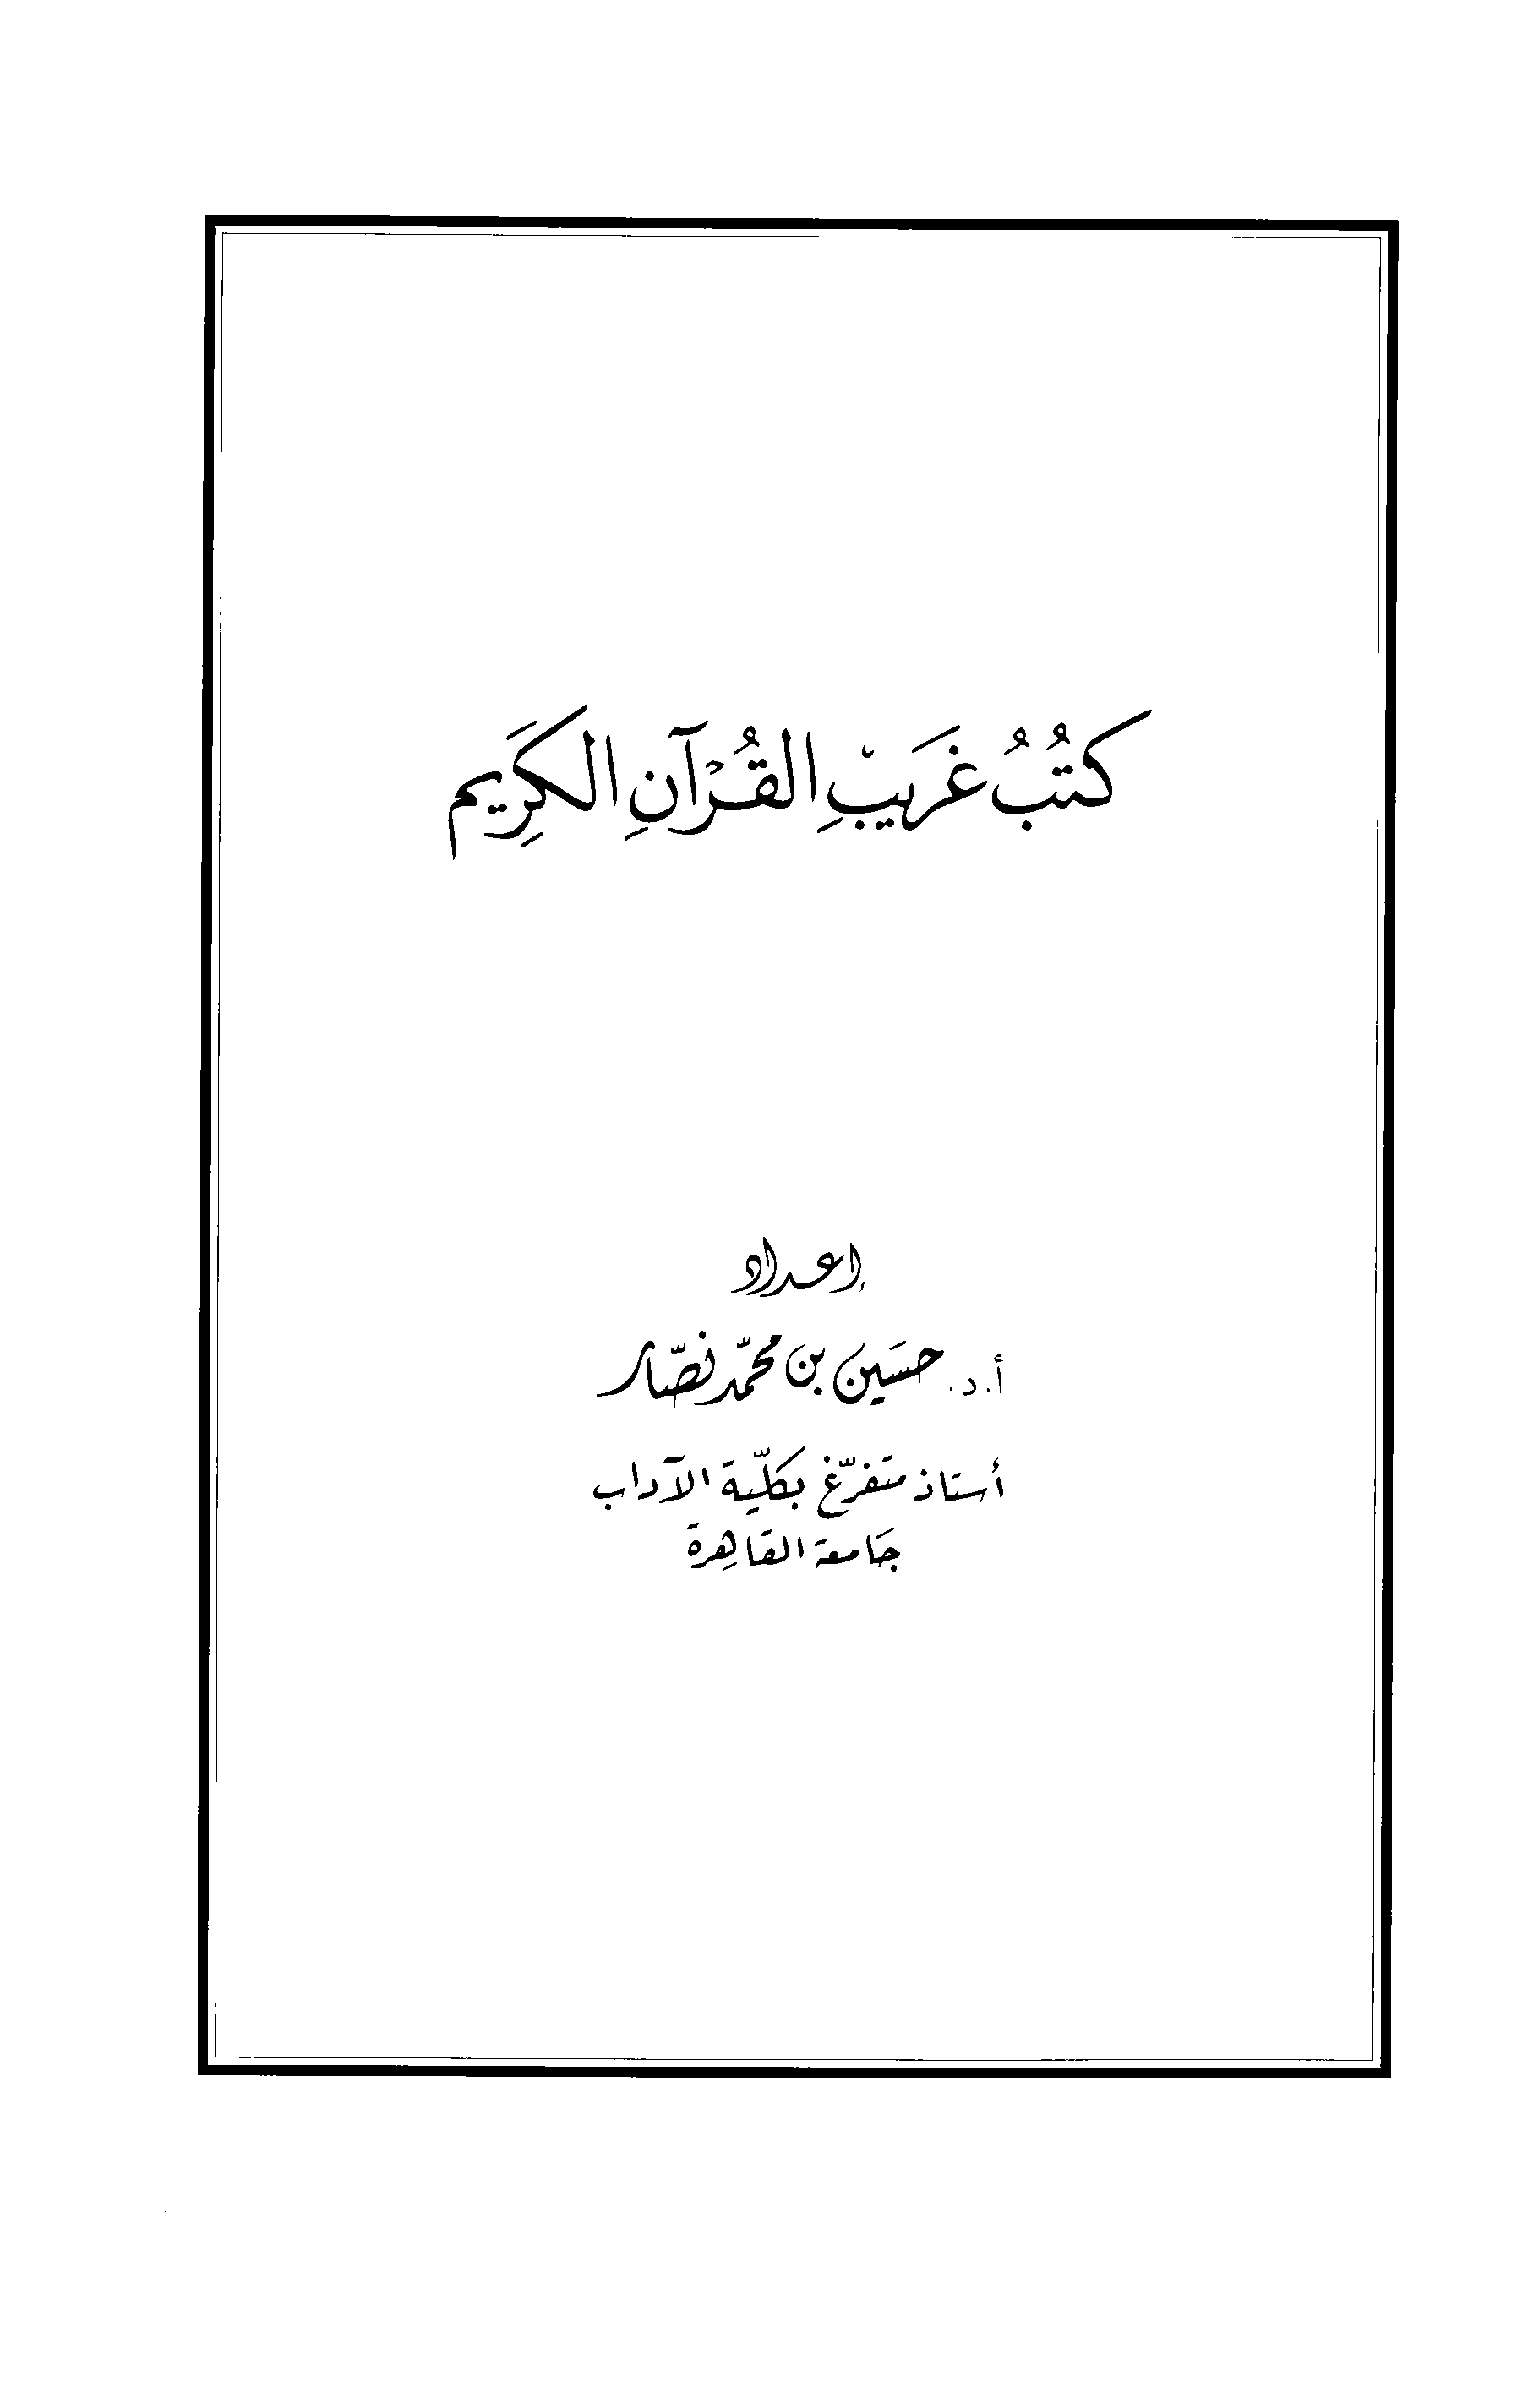 تحميل كتاب كتب غريب القرآن الكريم للمؤلف: الدكتور حسين بن محمد نصار